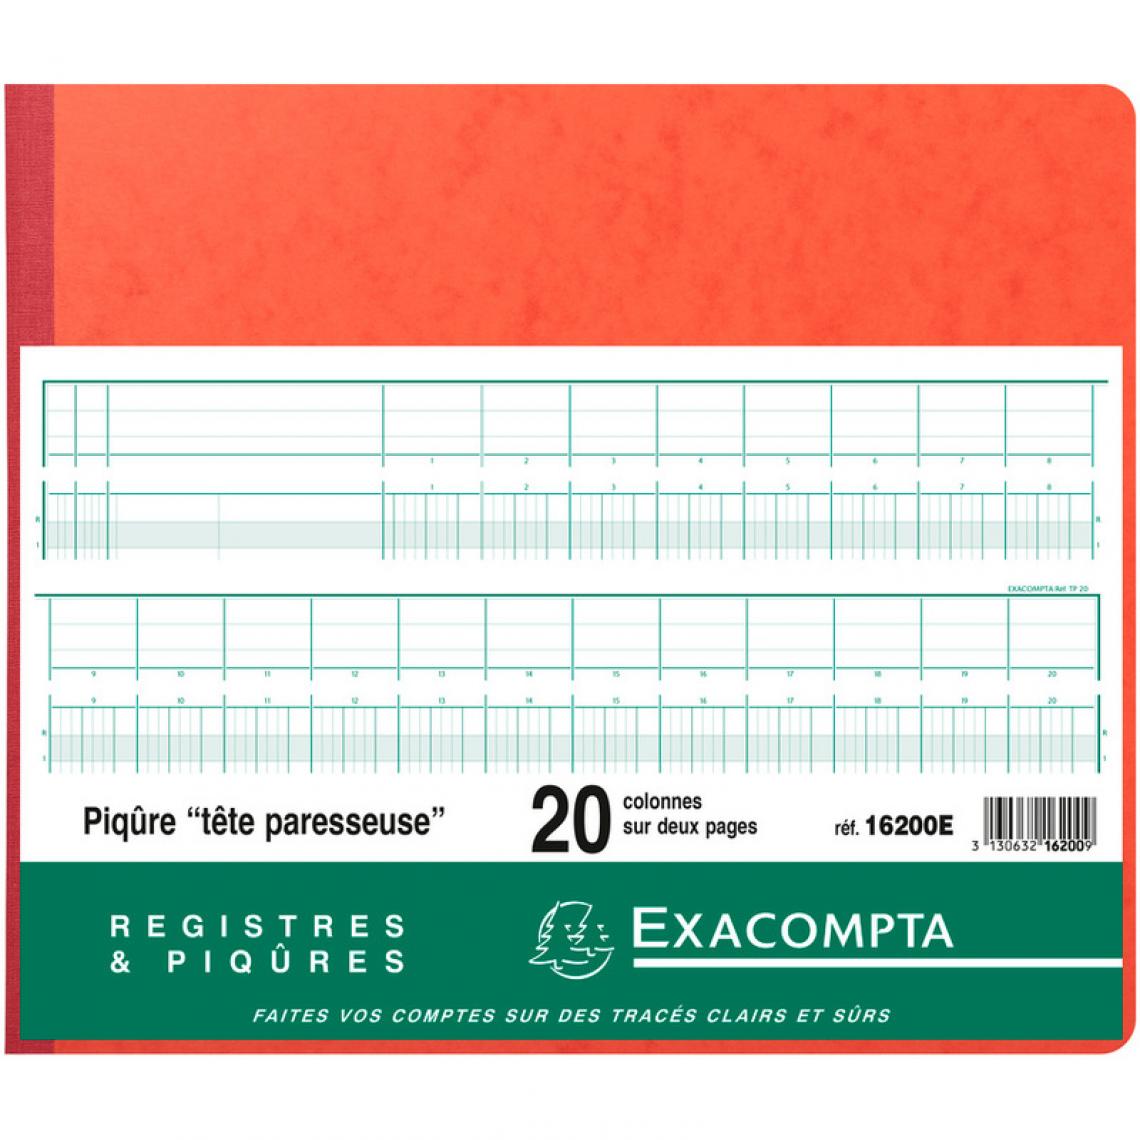 Exacompta - EXACOMPTA Piqûre tête paresseuse, 20 colonnes sur 2 pages () - Accessoires Bureau